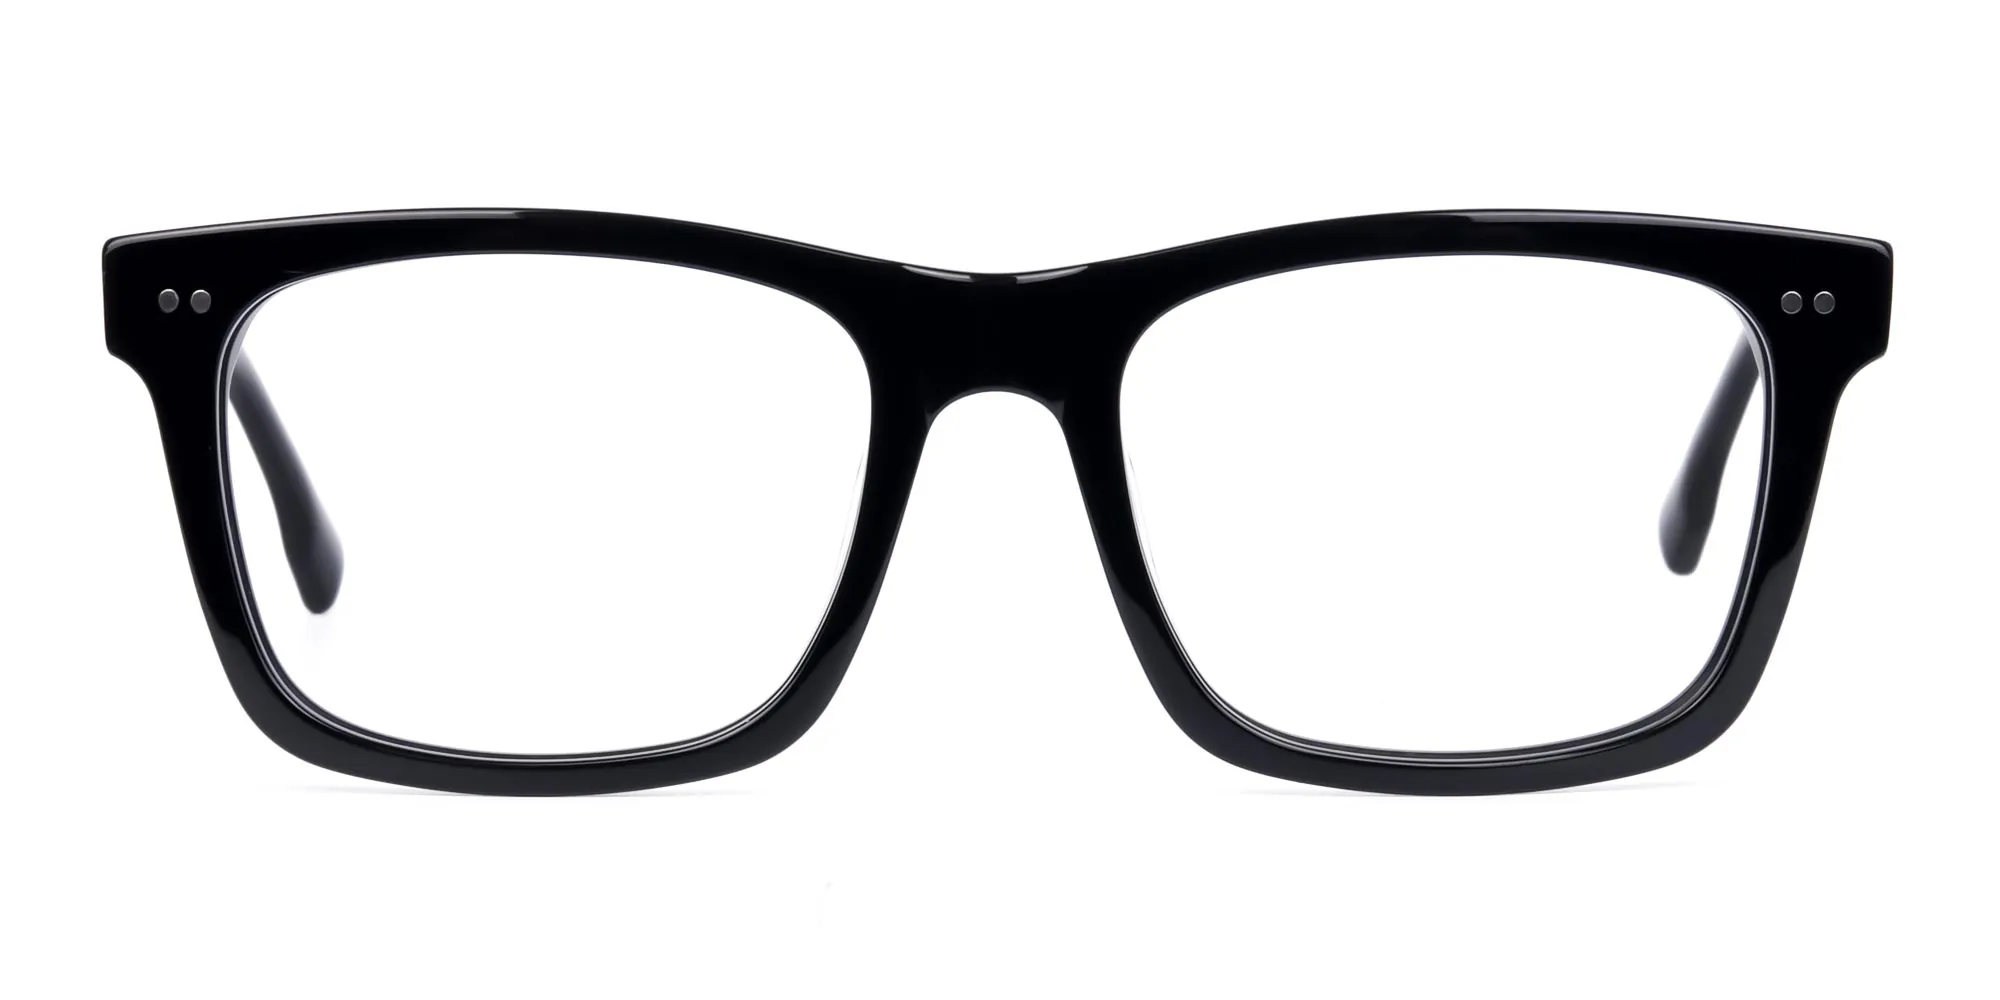 Black Square Glasses Frame-2